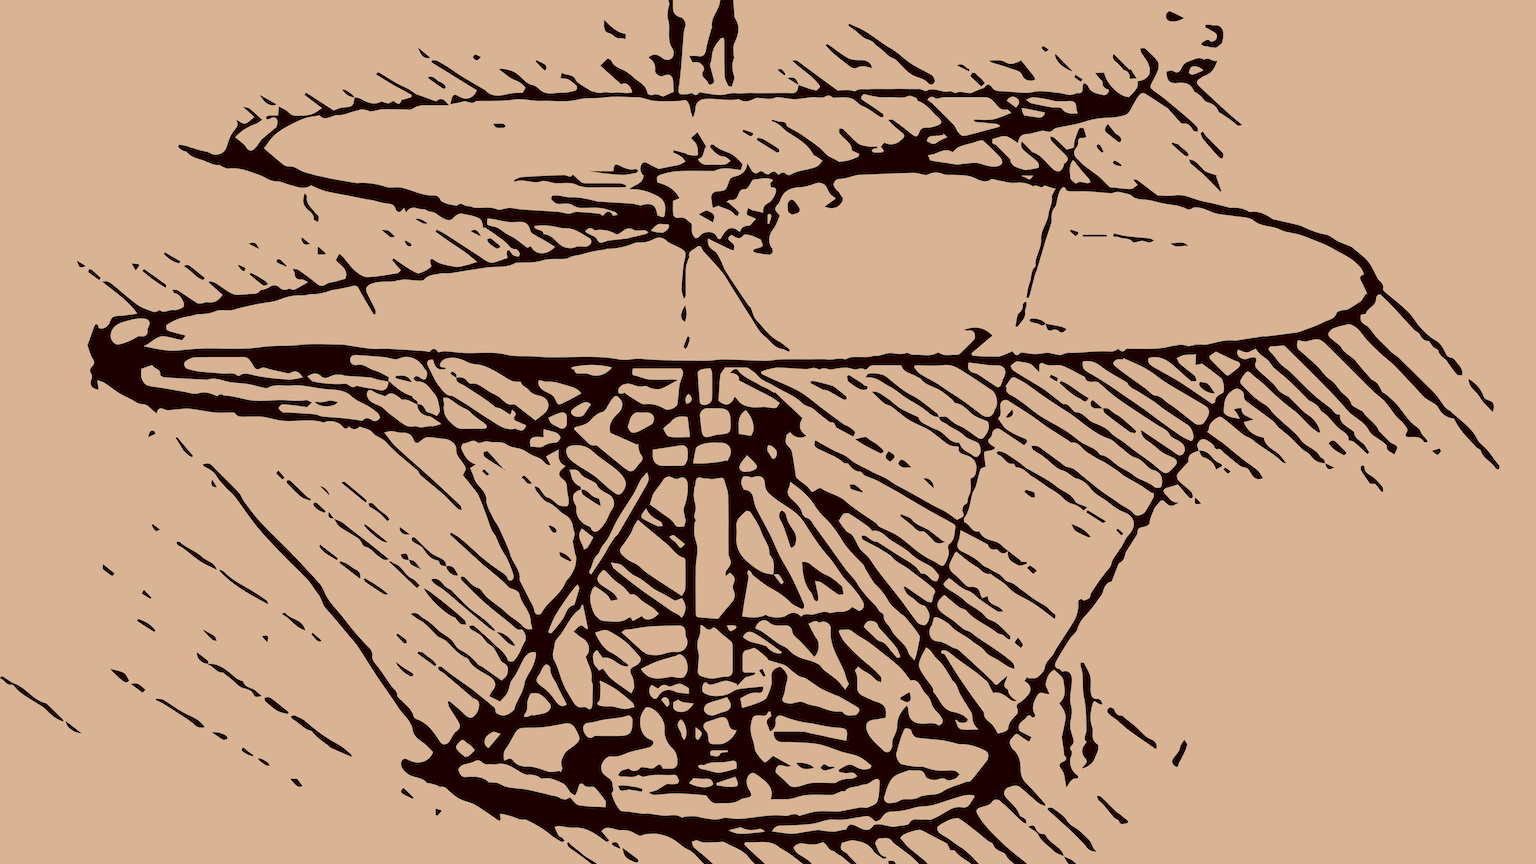 Invenții ale lui Leonardo da Vinci. Elicopterul